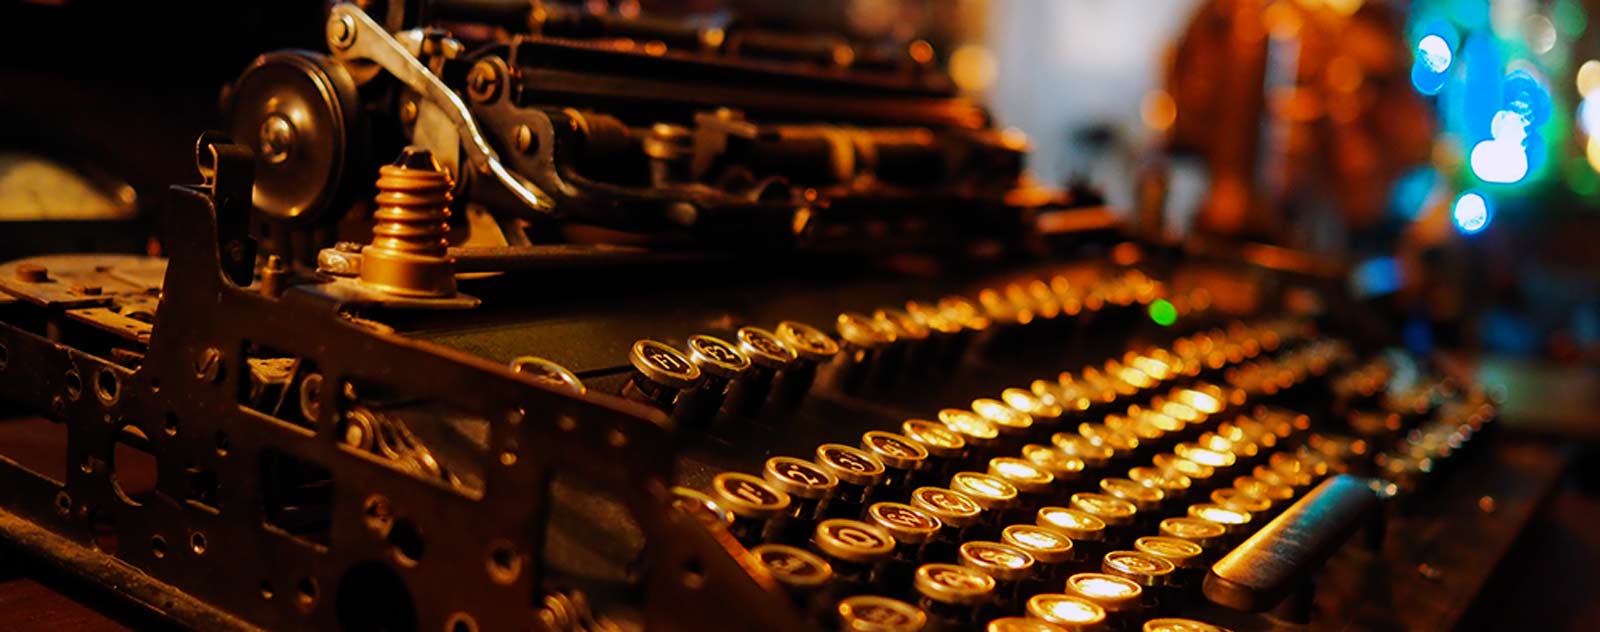 machine à écrire rétro